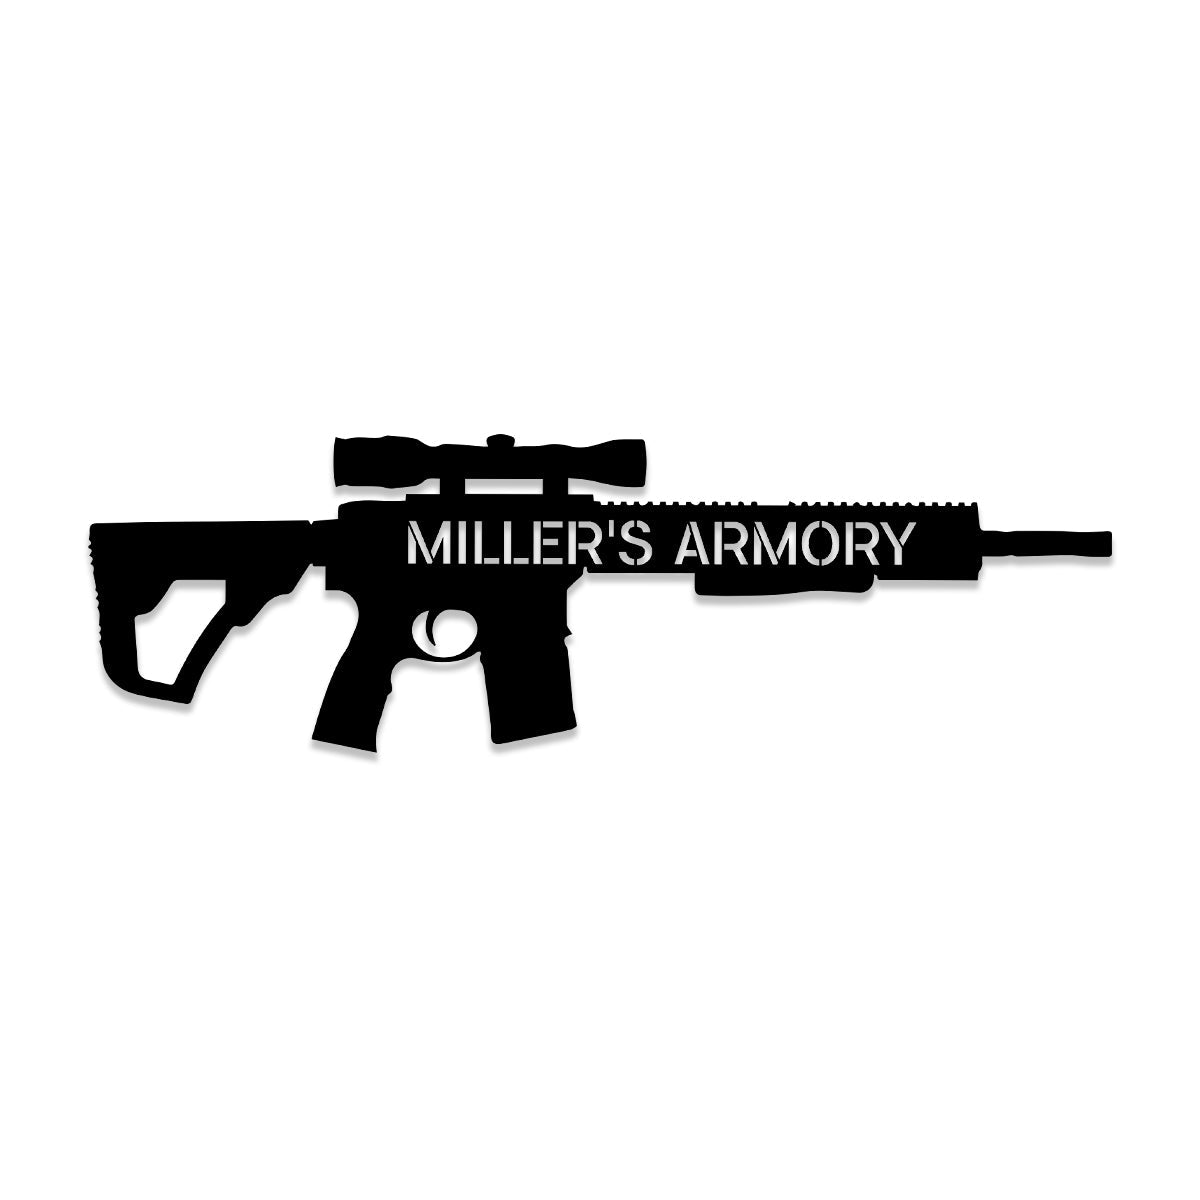 Personalized Gun Armory Veteran Metal Sign